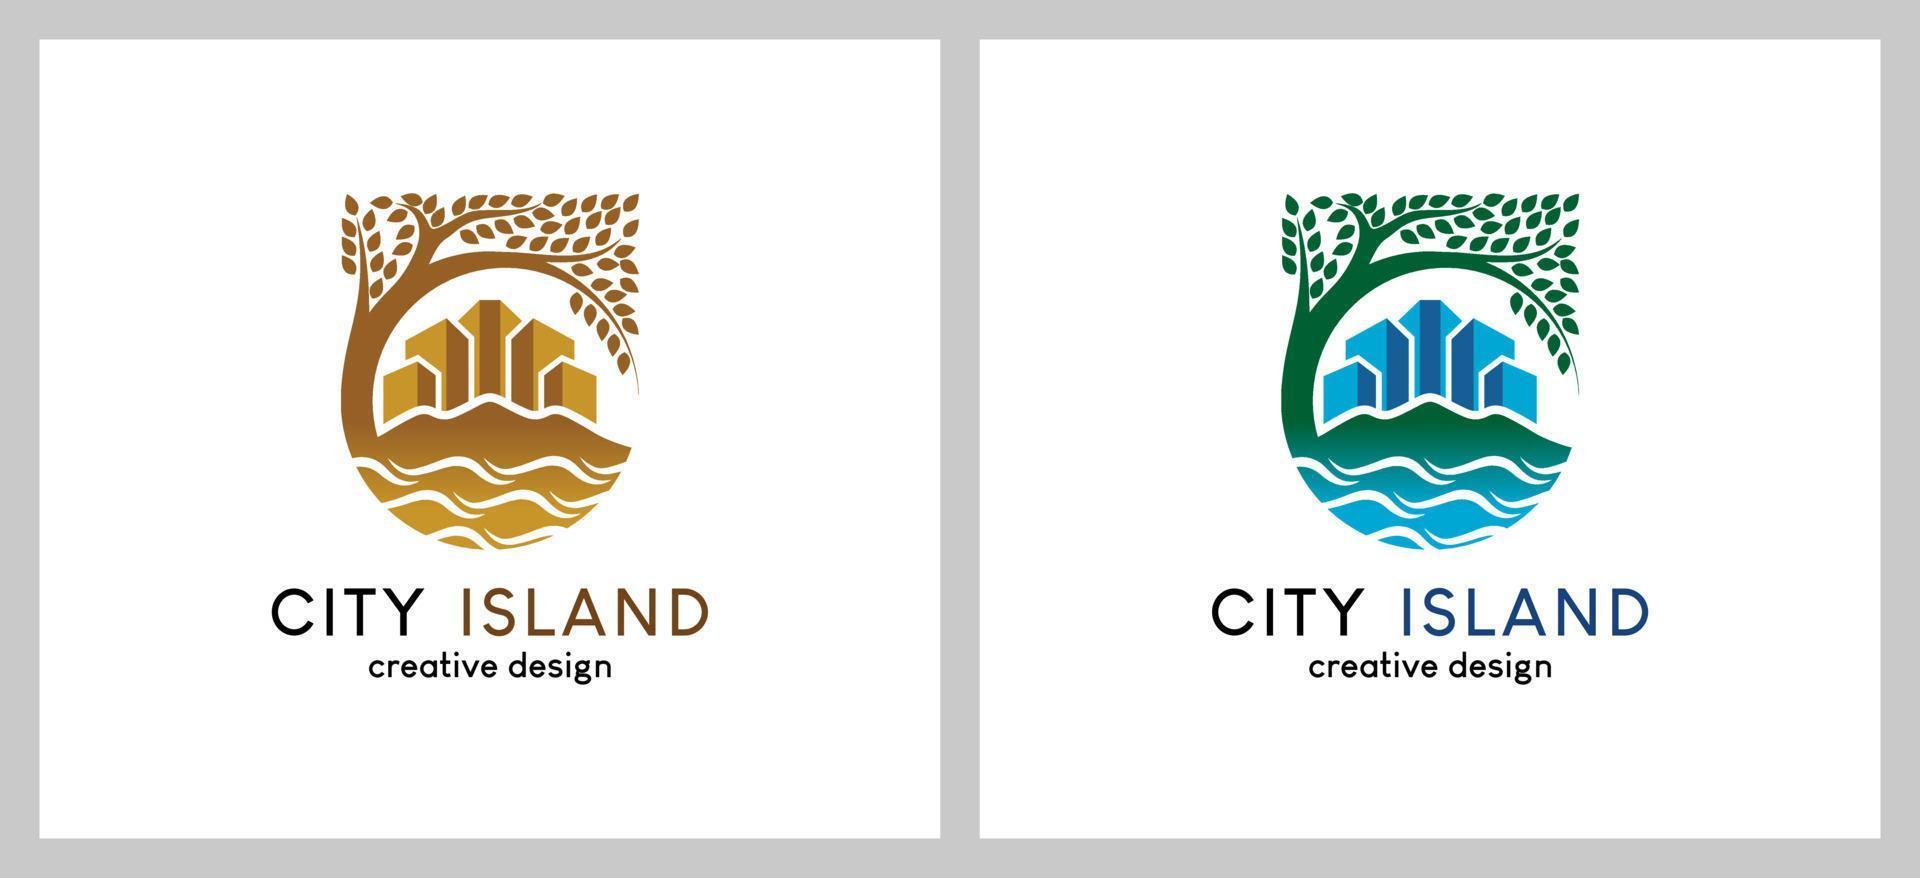 Beach city or island city building logo design with creative concept vector